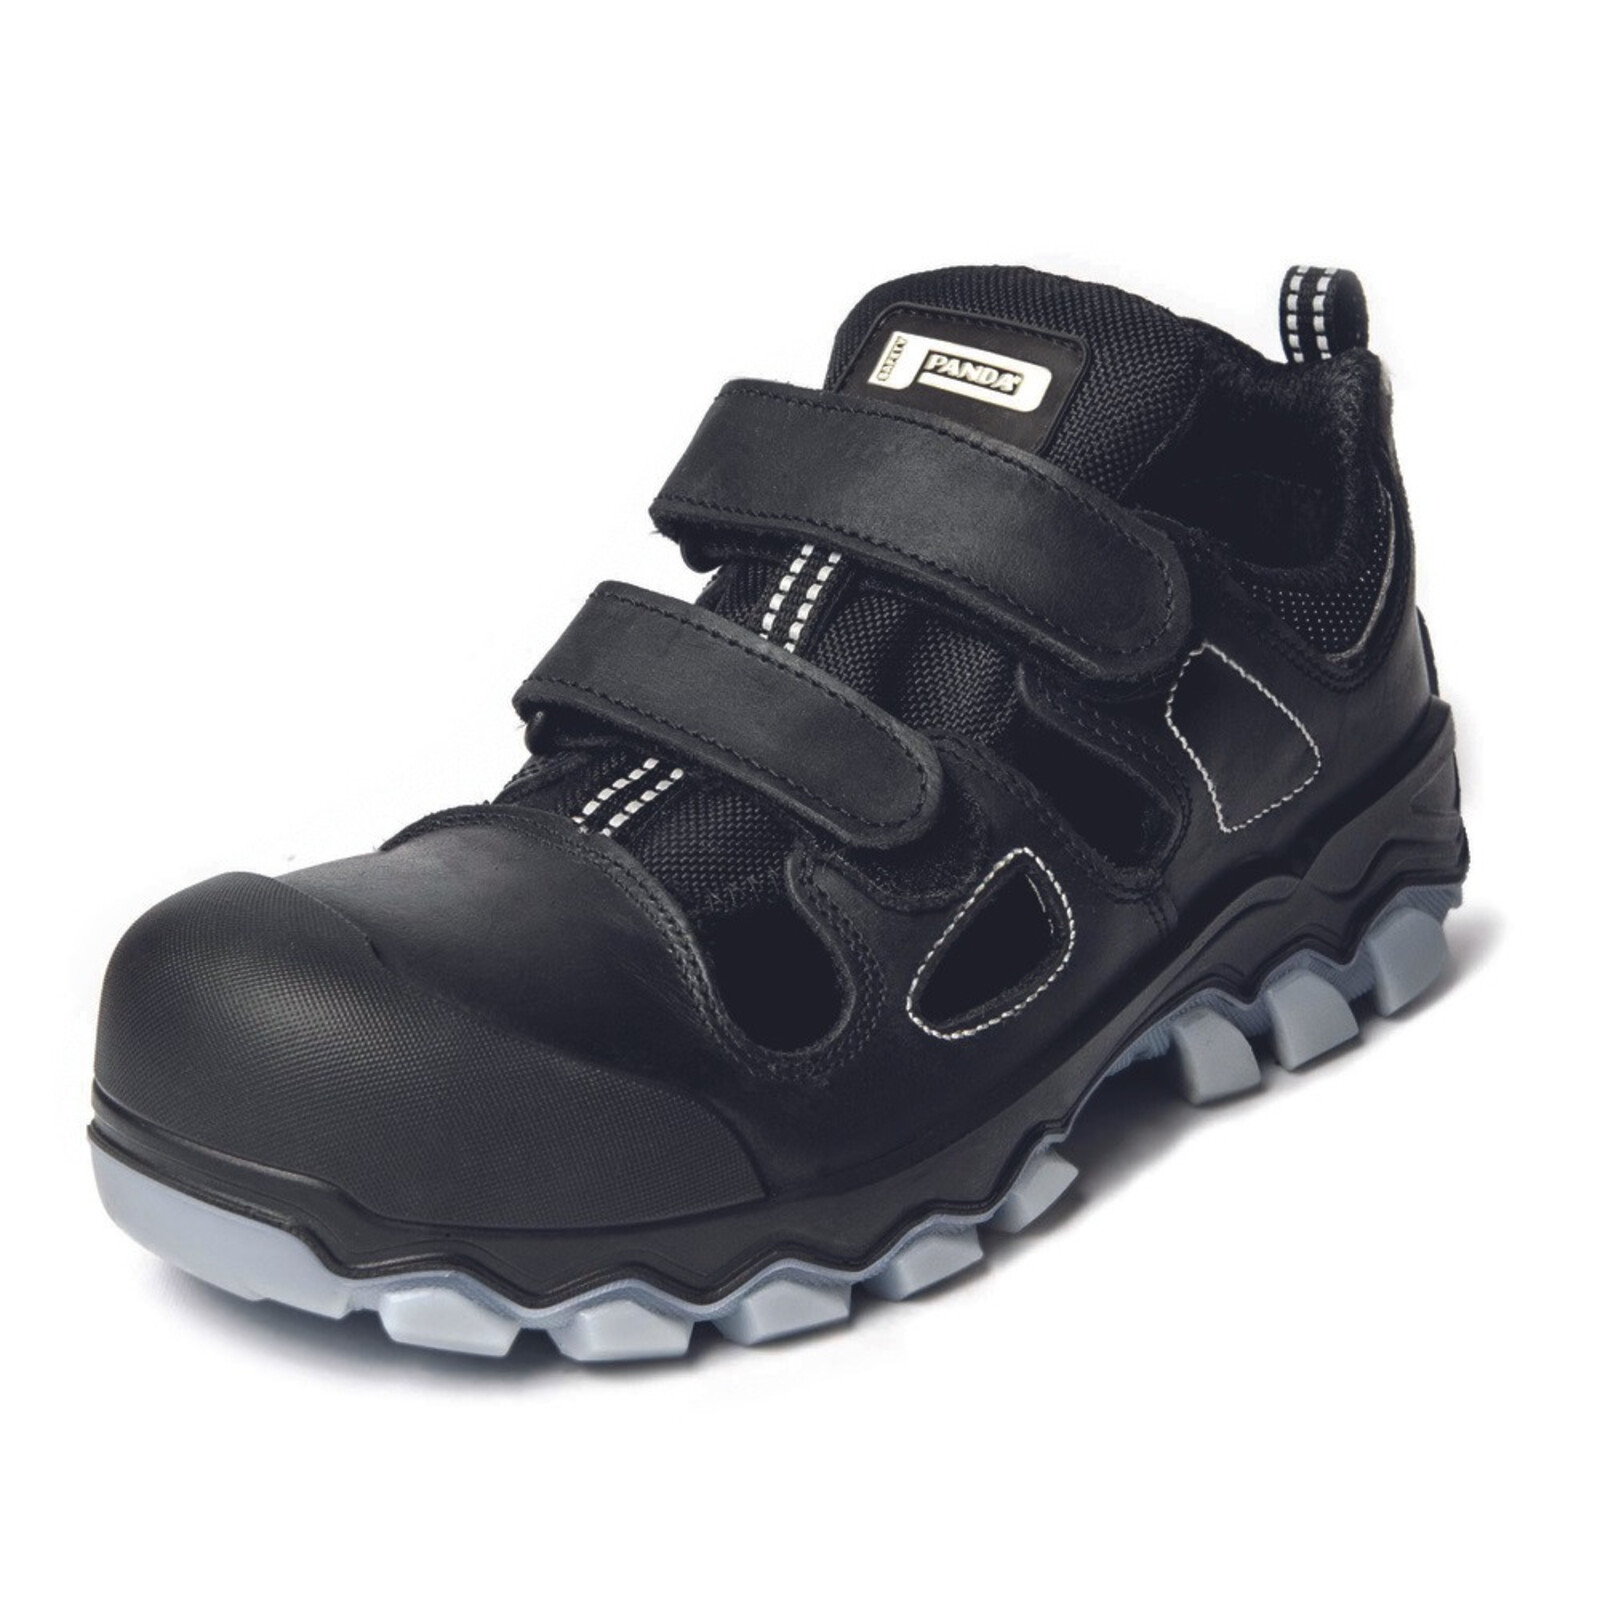 Bezpečnostné sandále Panda Techo No. Two MF S1P SRC - veľkosť: 46, farba: čierna/sivá